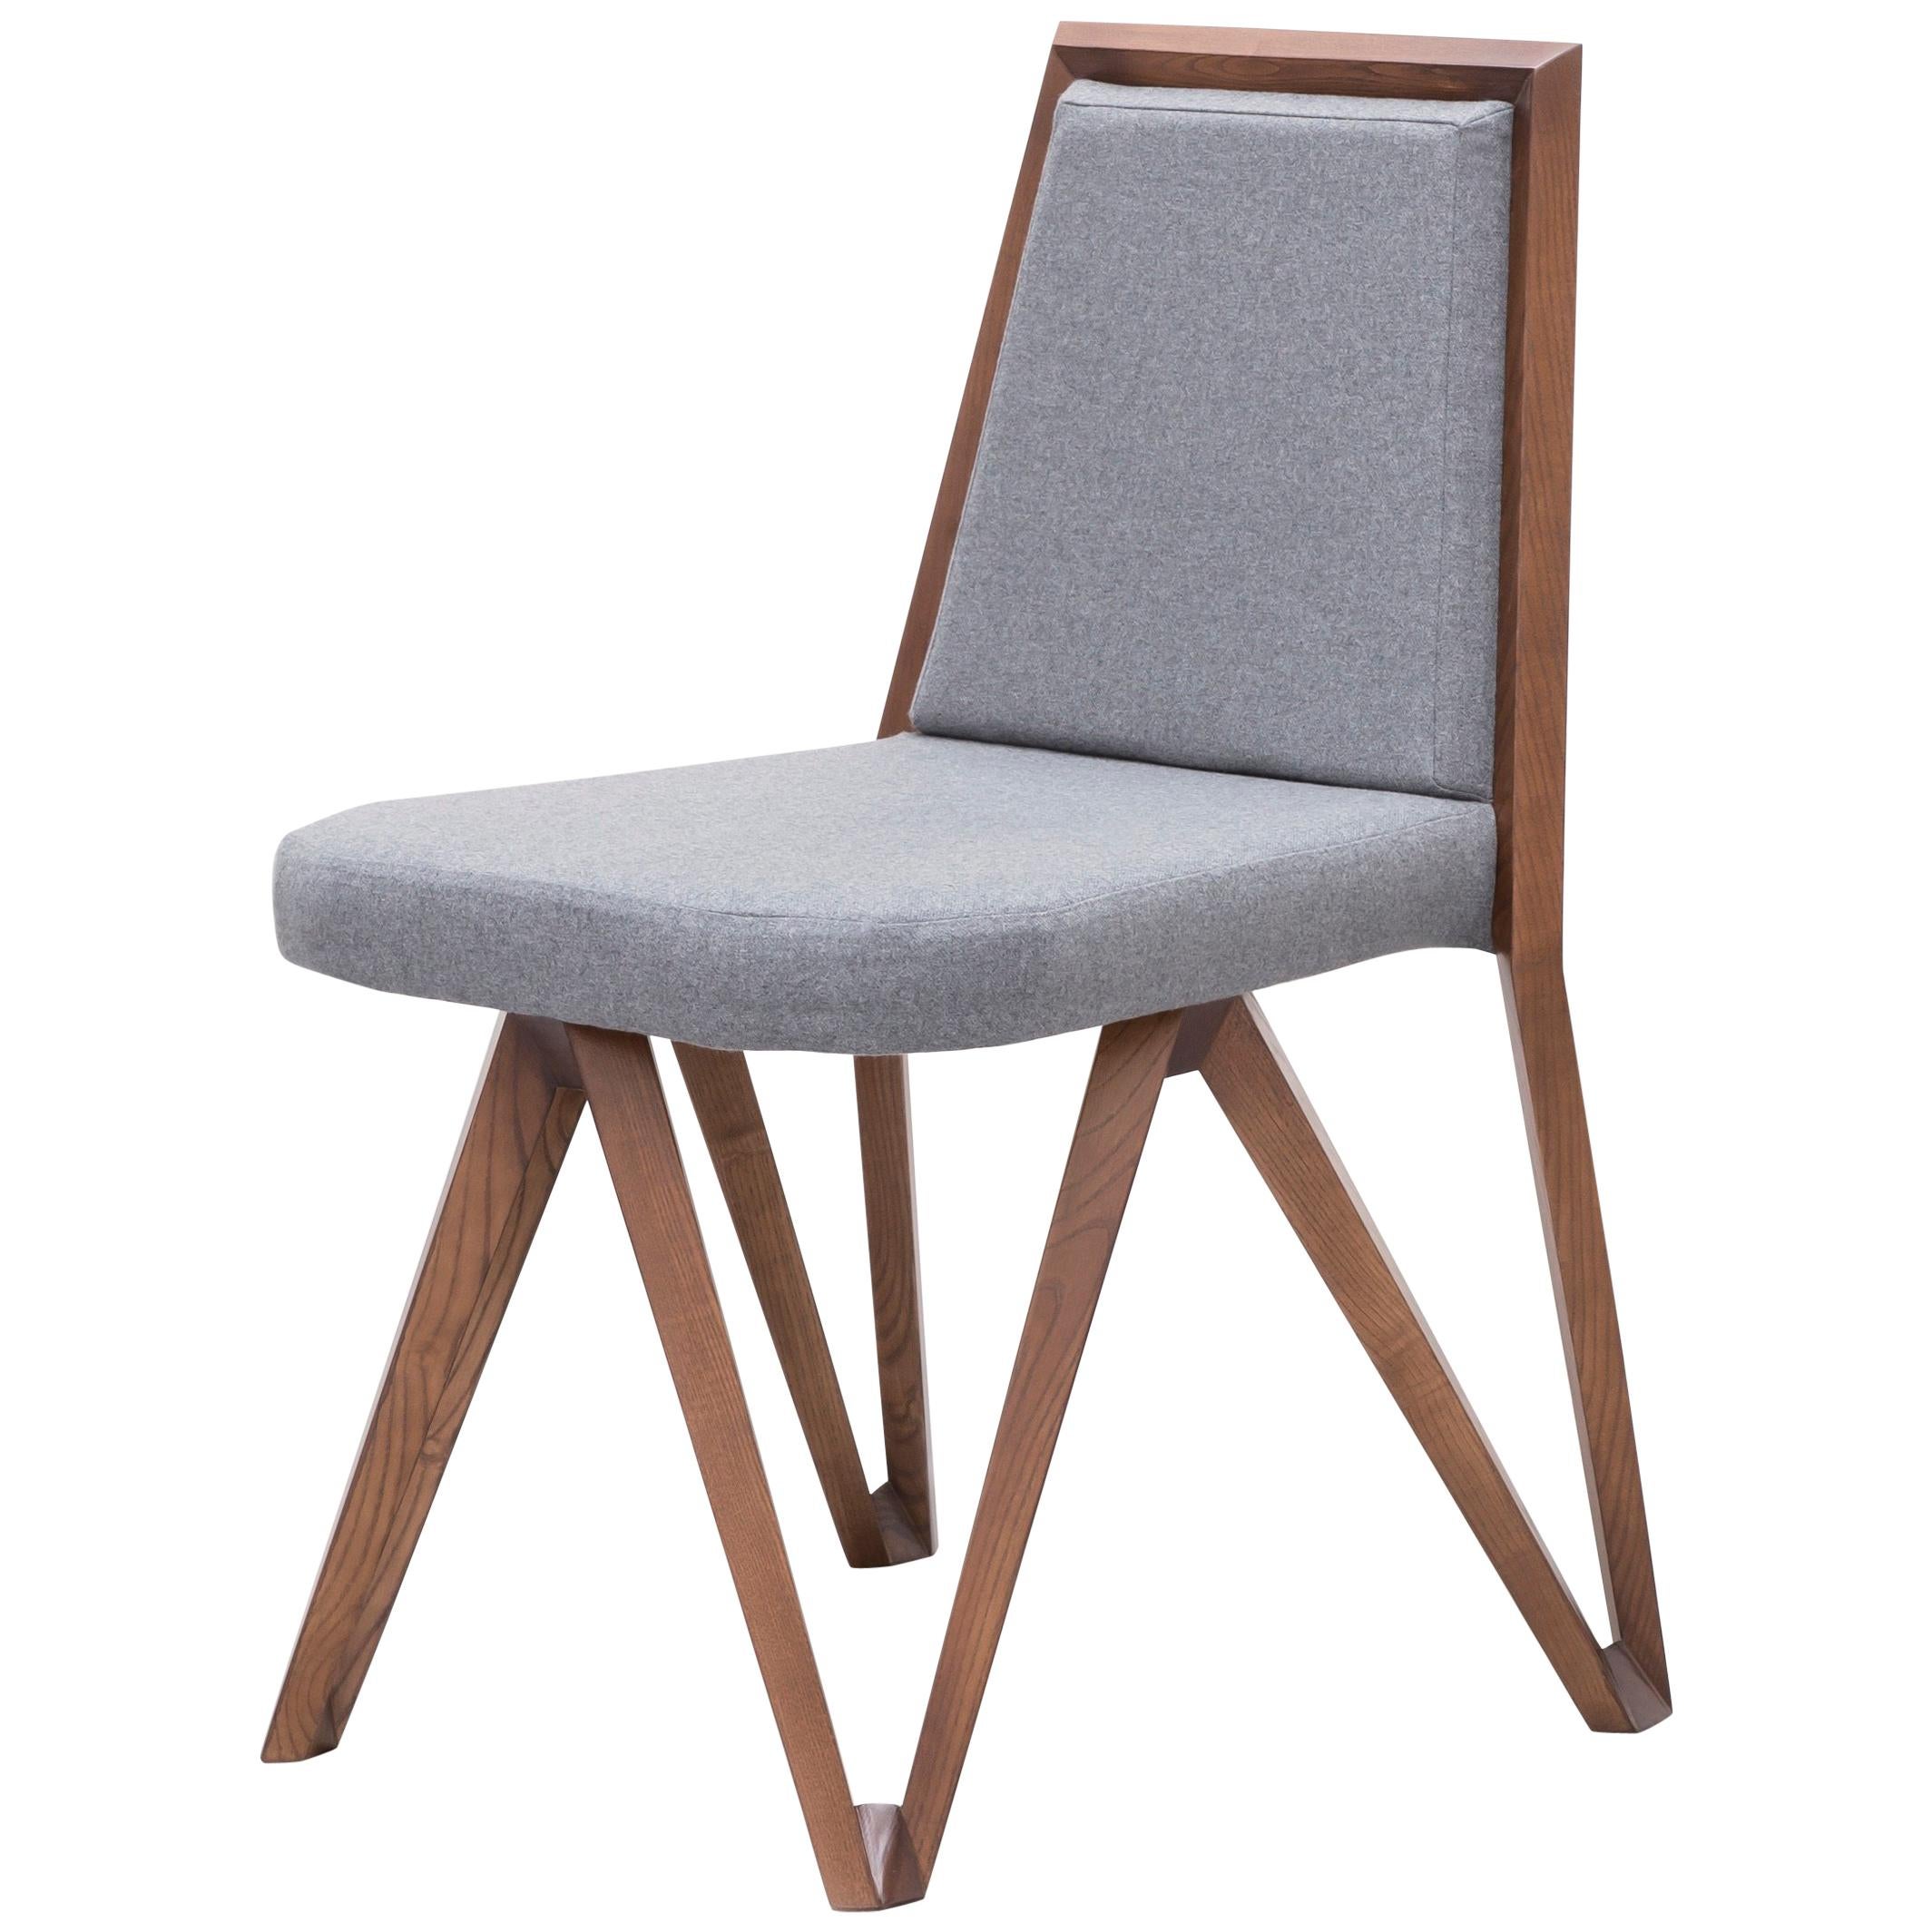 Oktopussy Side Chair by Jean Louis Deniot for Marc de Berny For Sale